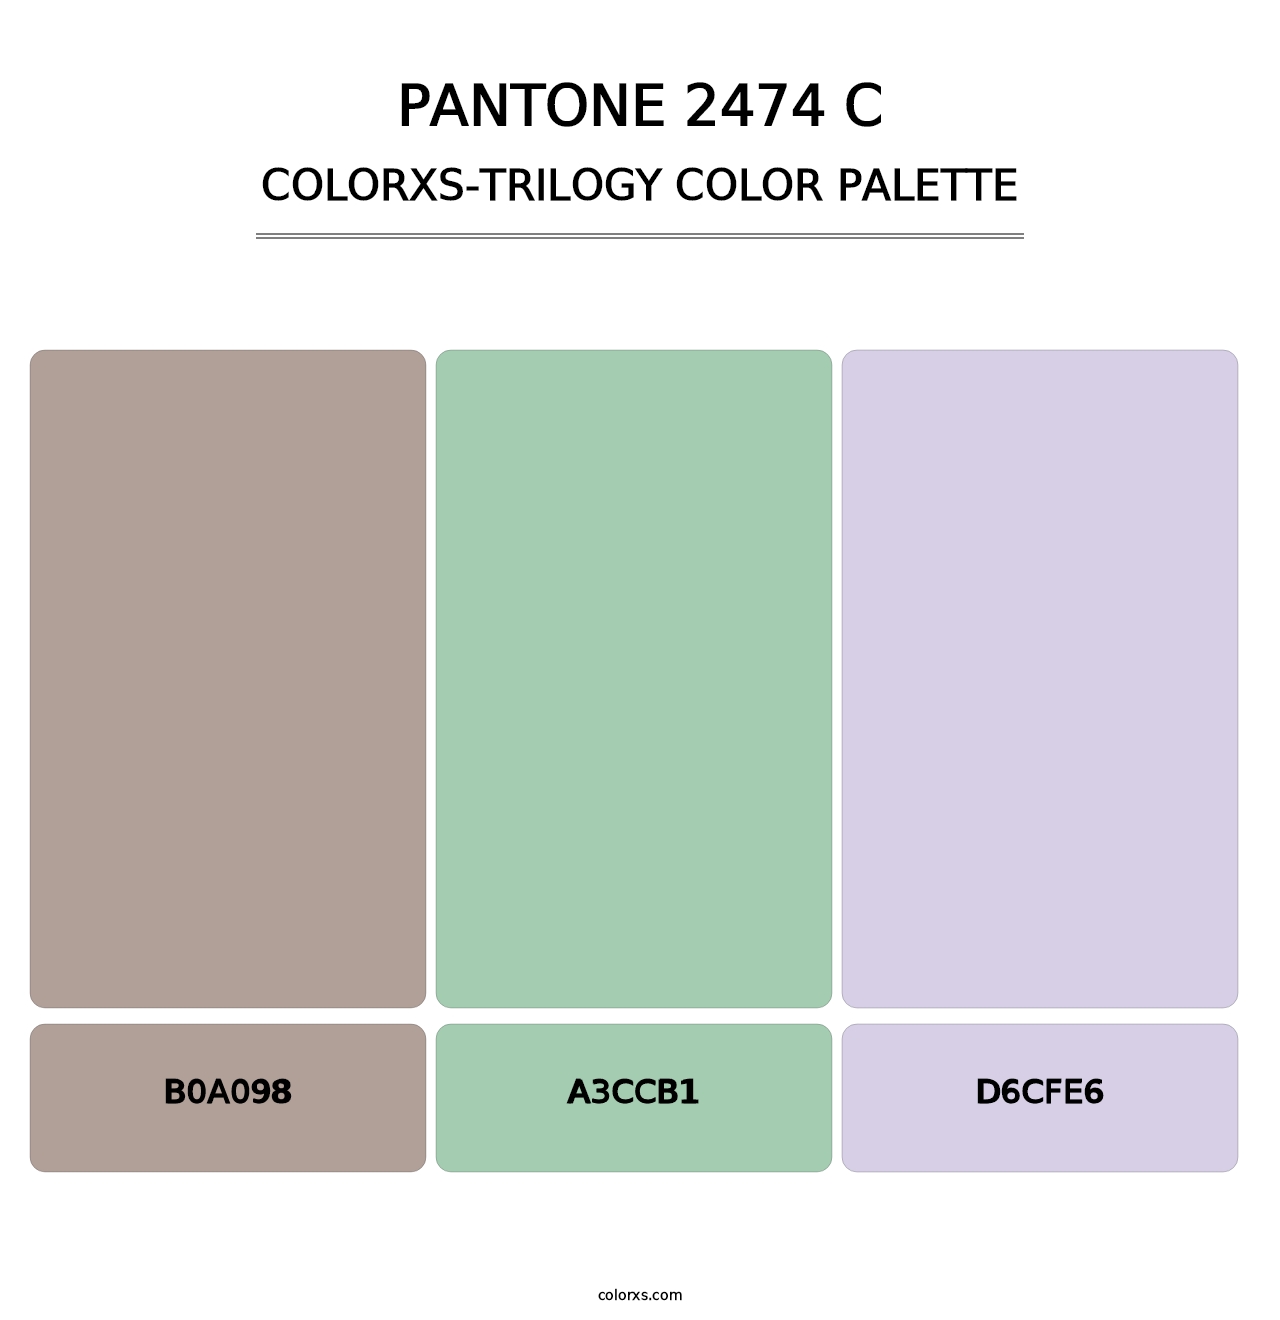 PANTONE 2474 C - Colorxs Trilogy Palette